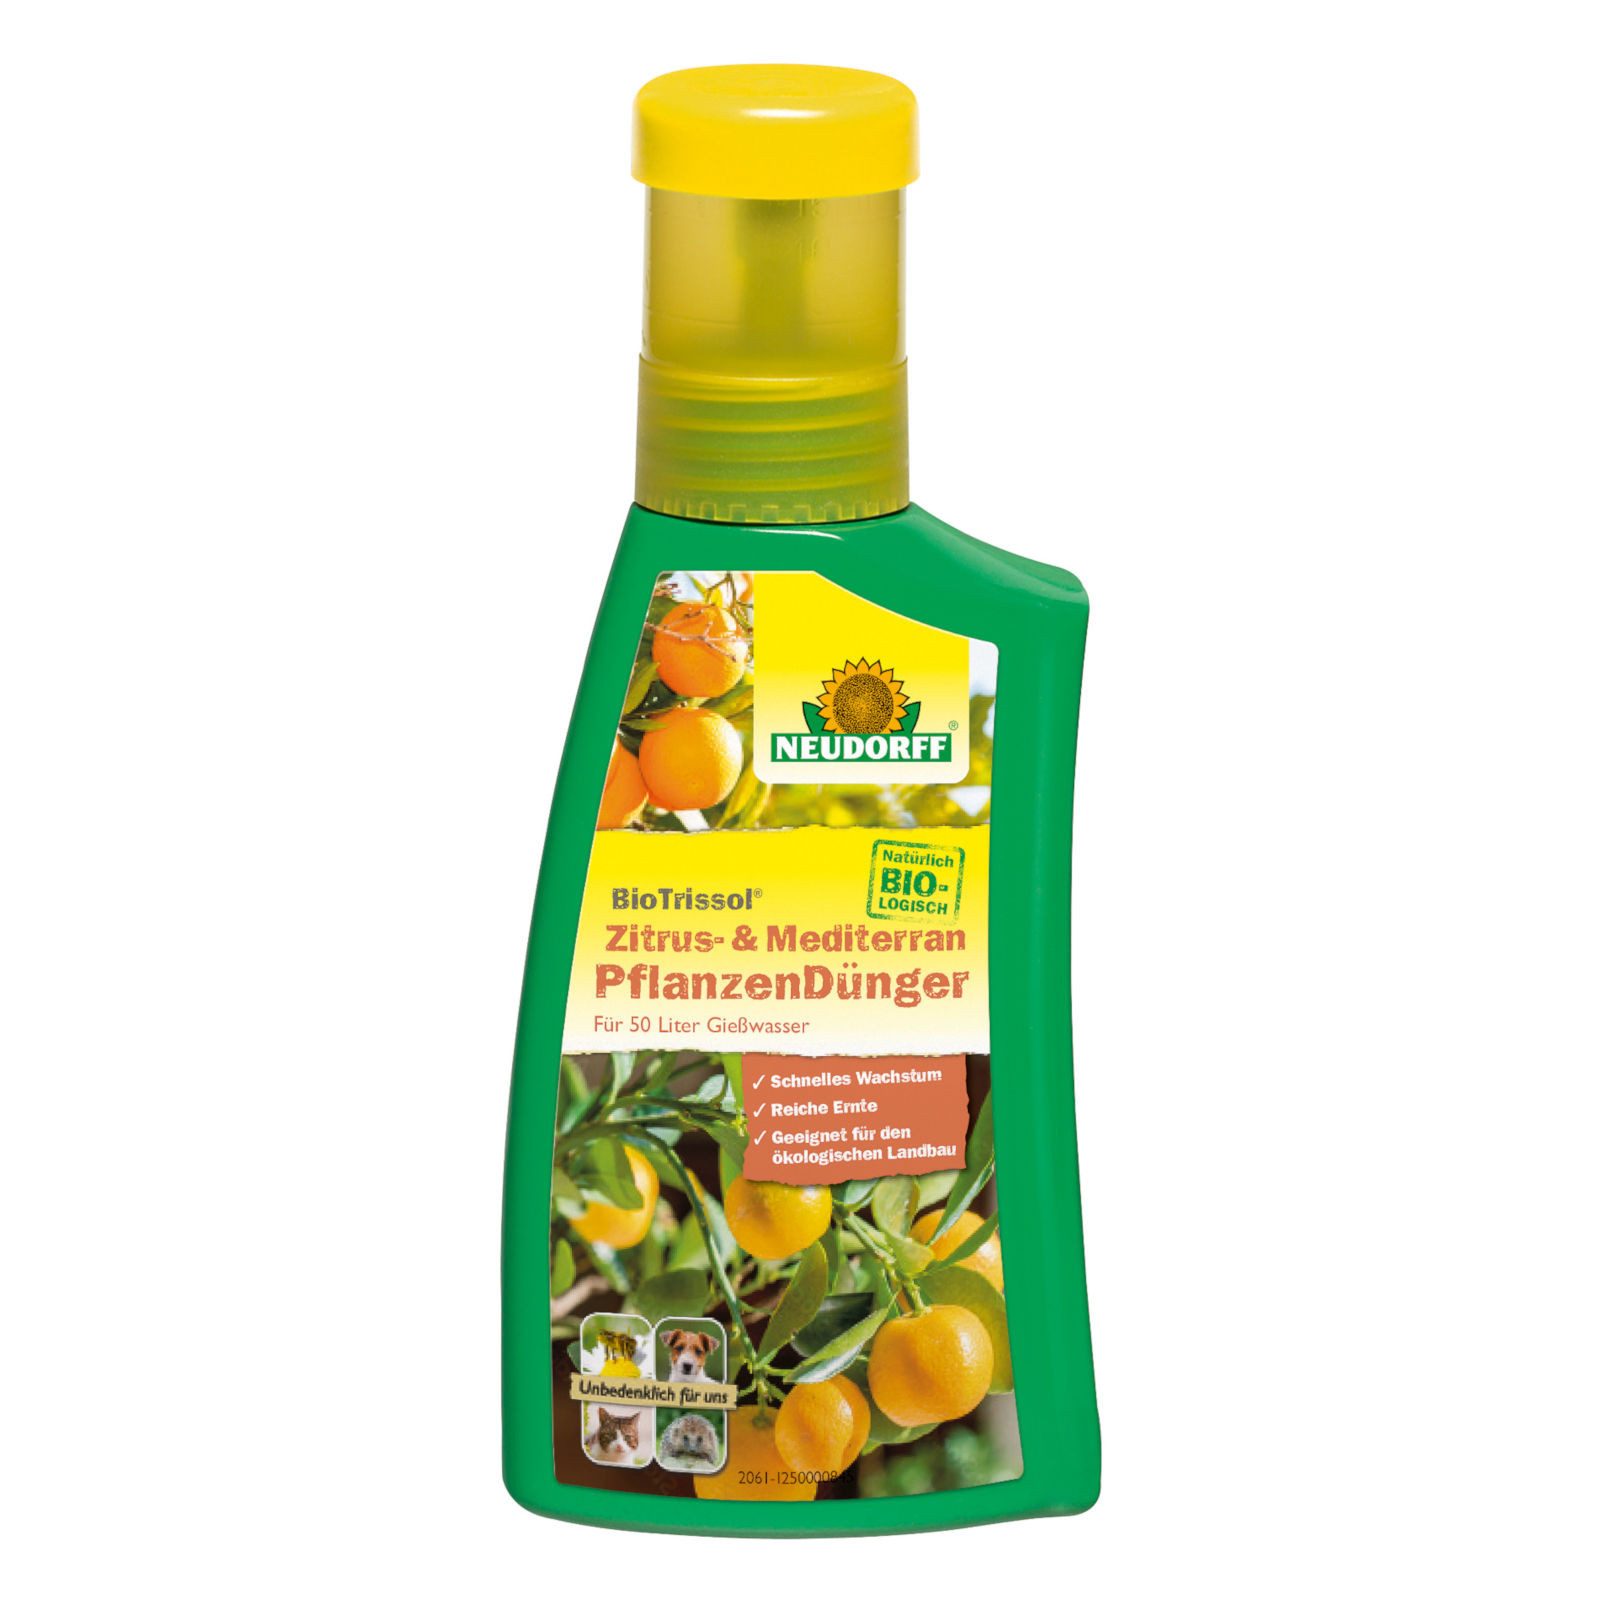 Neudorff Pflanzendünger BioTrissol Zitrus- & MediterranpflanzenDünger - 250 ml